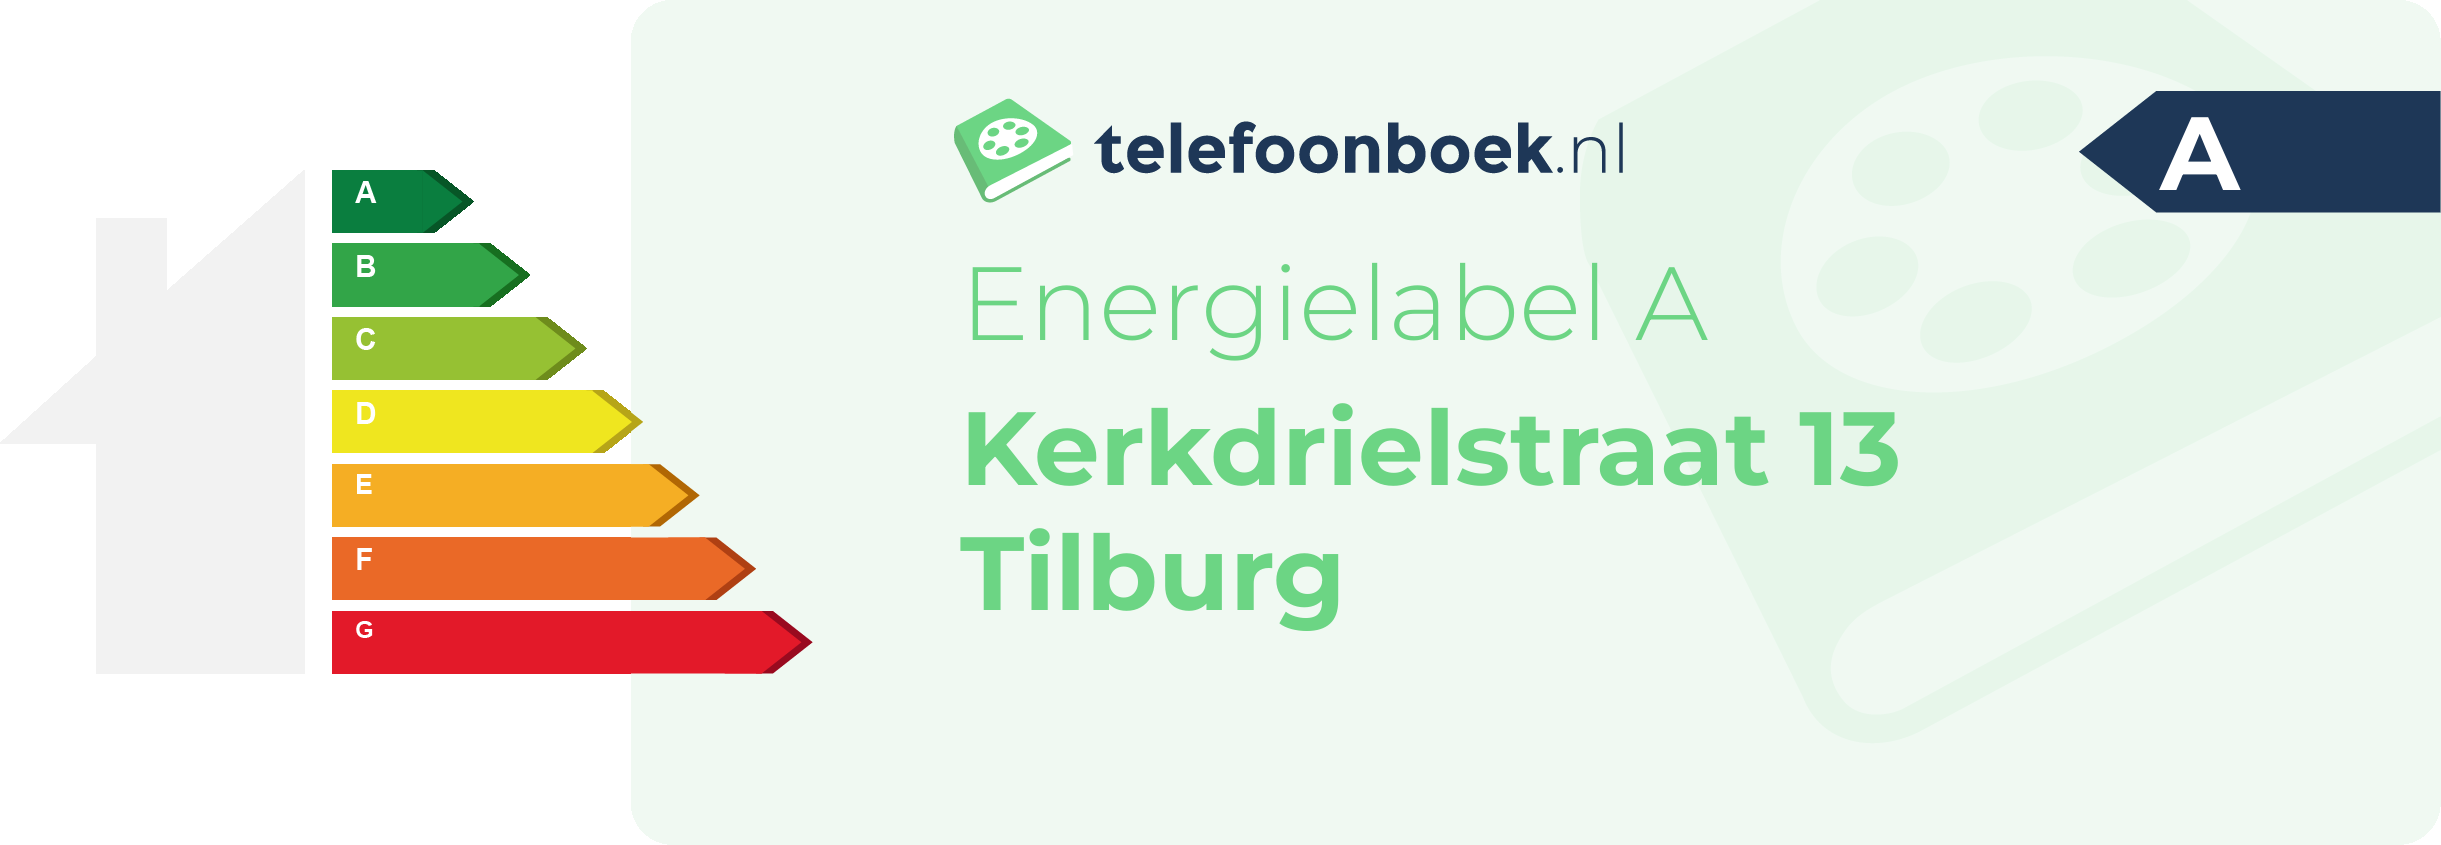 Energielabel Kerkdrielstraat 13 Tilburg